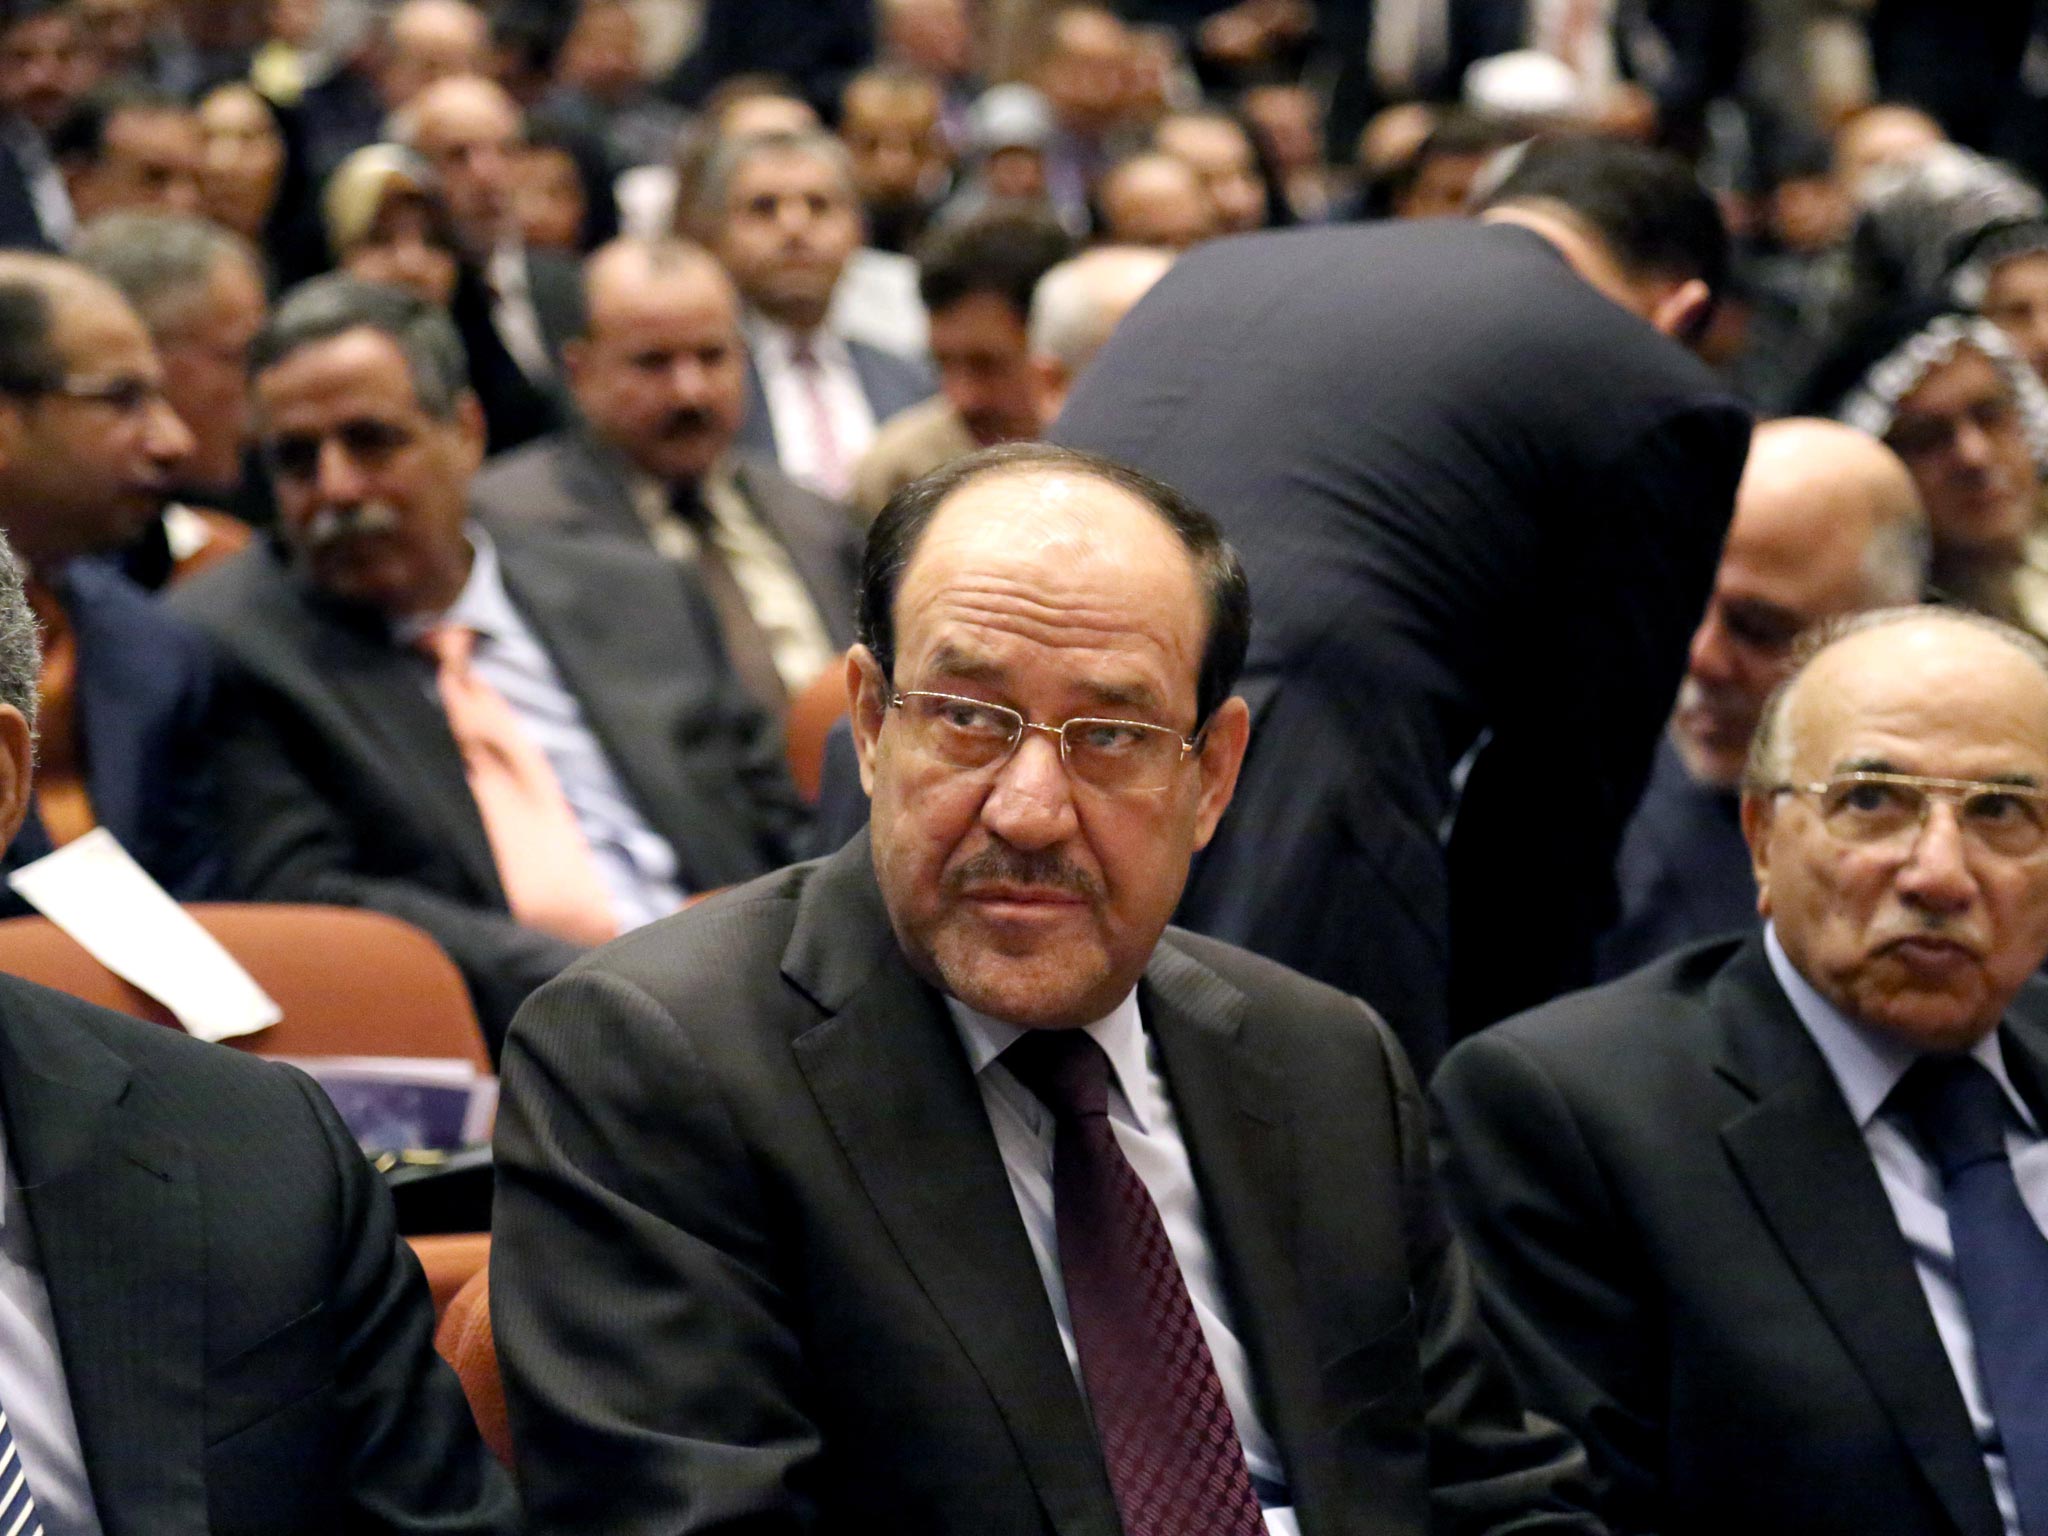 The Iraqi Prime Minister Nouri al-Maliki has blamed
‘conspirators’ for the fall of Mosul